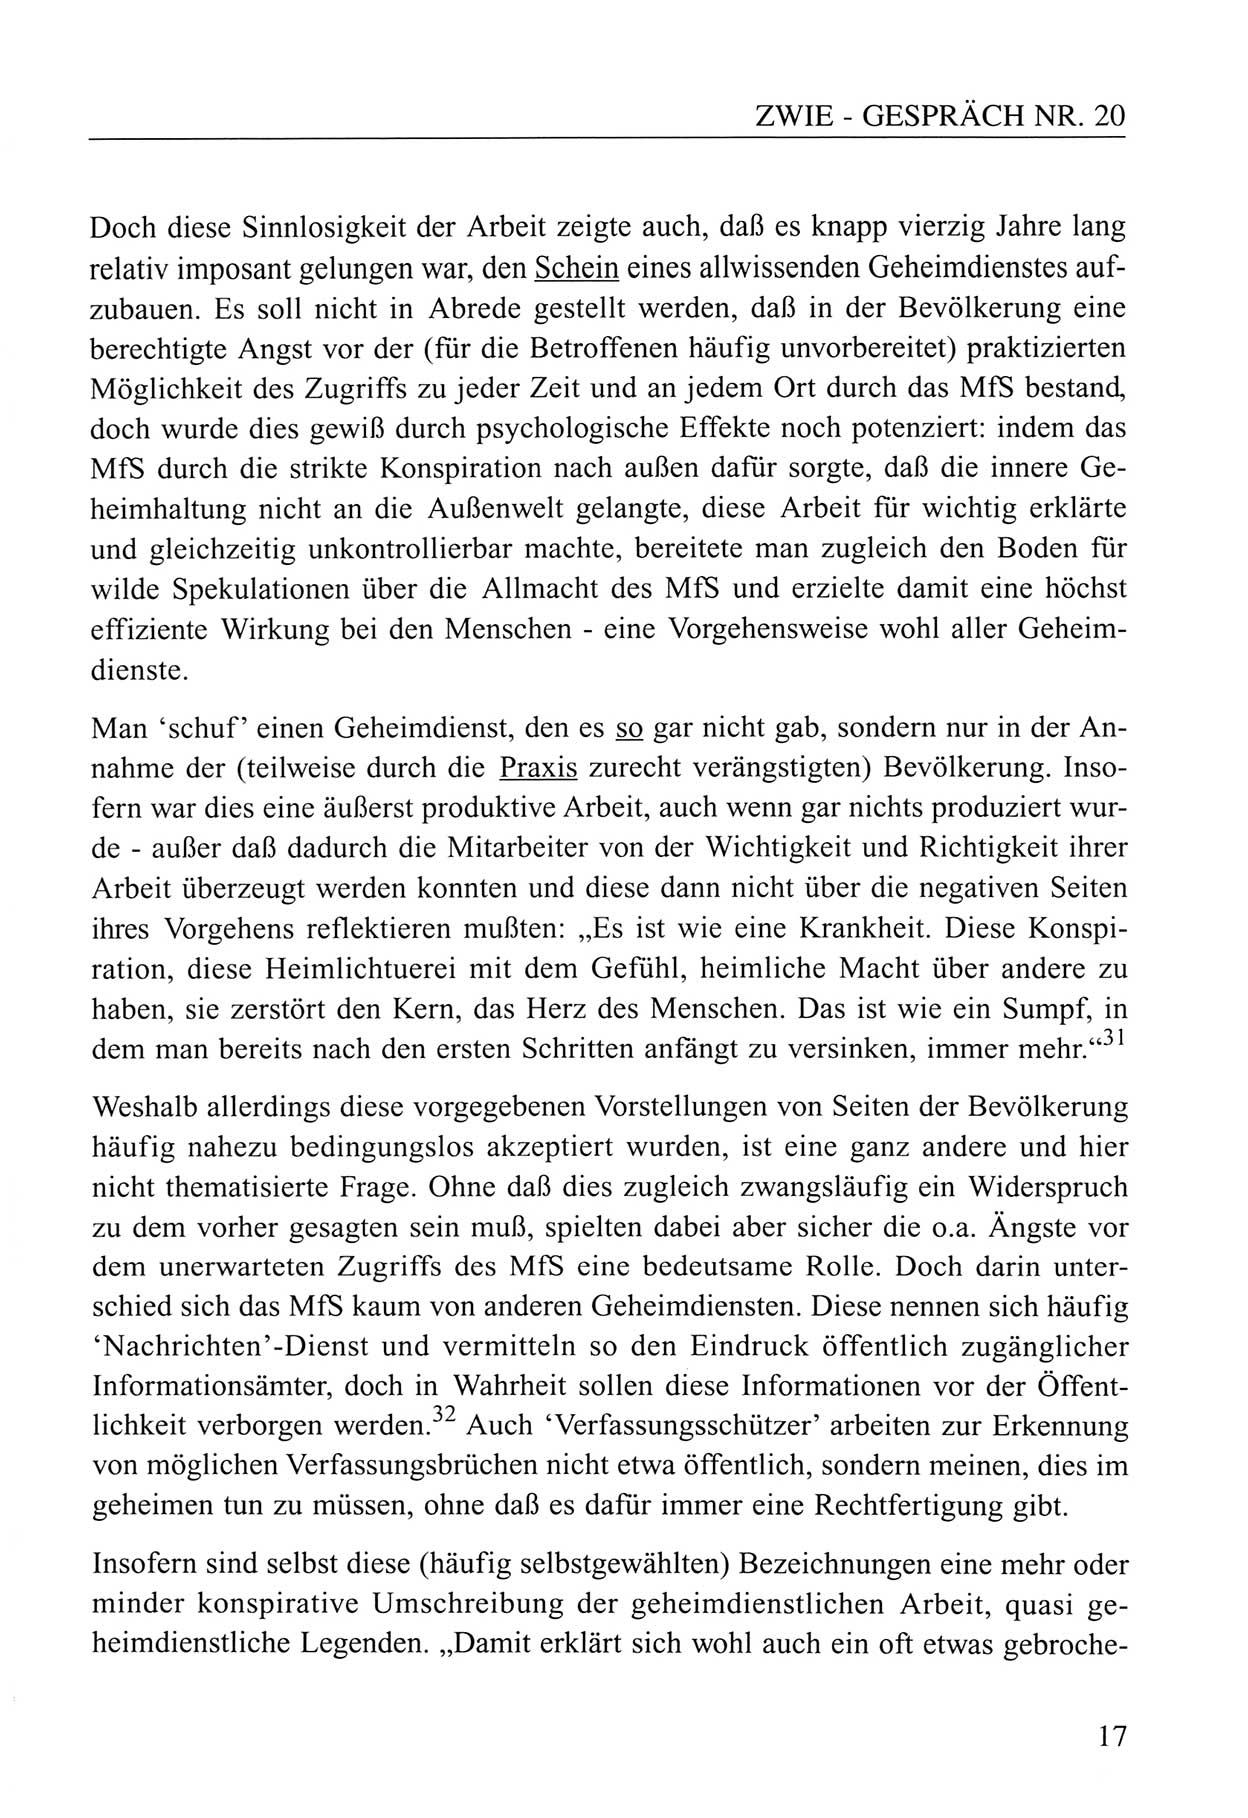 Zwie-Gespräch, Beiträge zum Umgang mit der Staatssicherheits-Vergangenheit [Deutsche Demokratische Republik (DDR)], Ausgabe Nr. 20, Berlin 1994, Seite 17 (Zwie-Gespr. Ausg. 20 1994, S. 17)